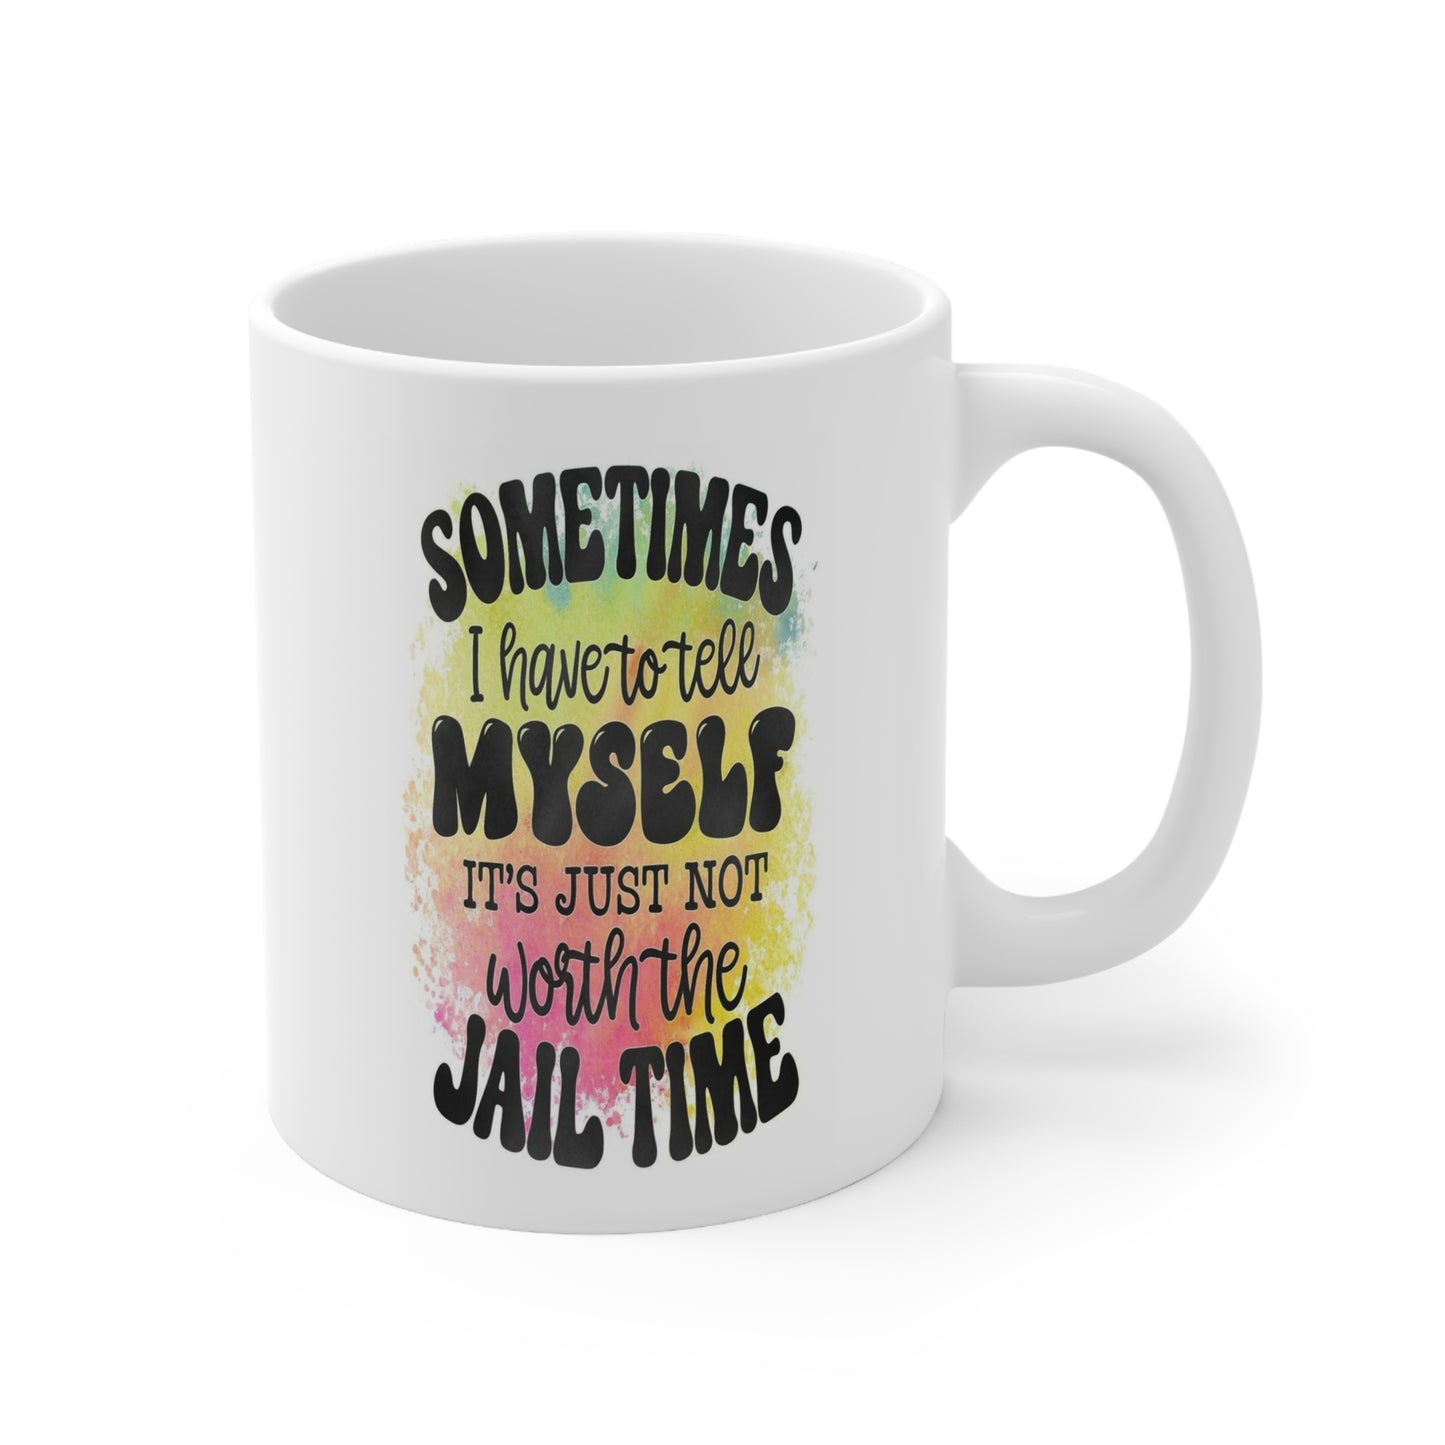 Worth the Jail Time? Humor: Ceramic Mug 11oz